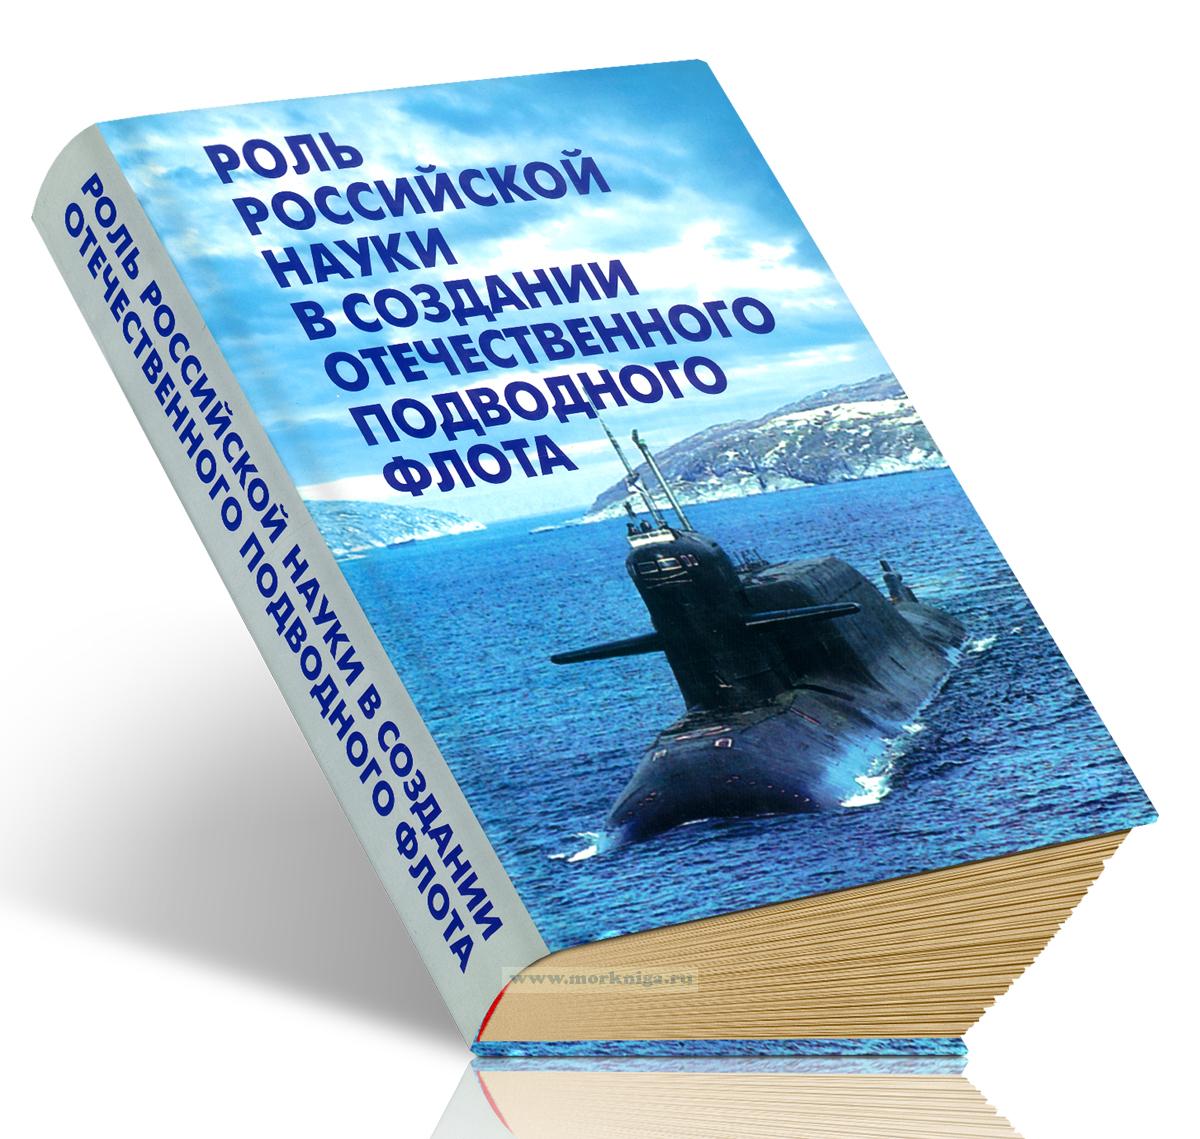 Роль российской науки в создании отечественного подводного флота